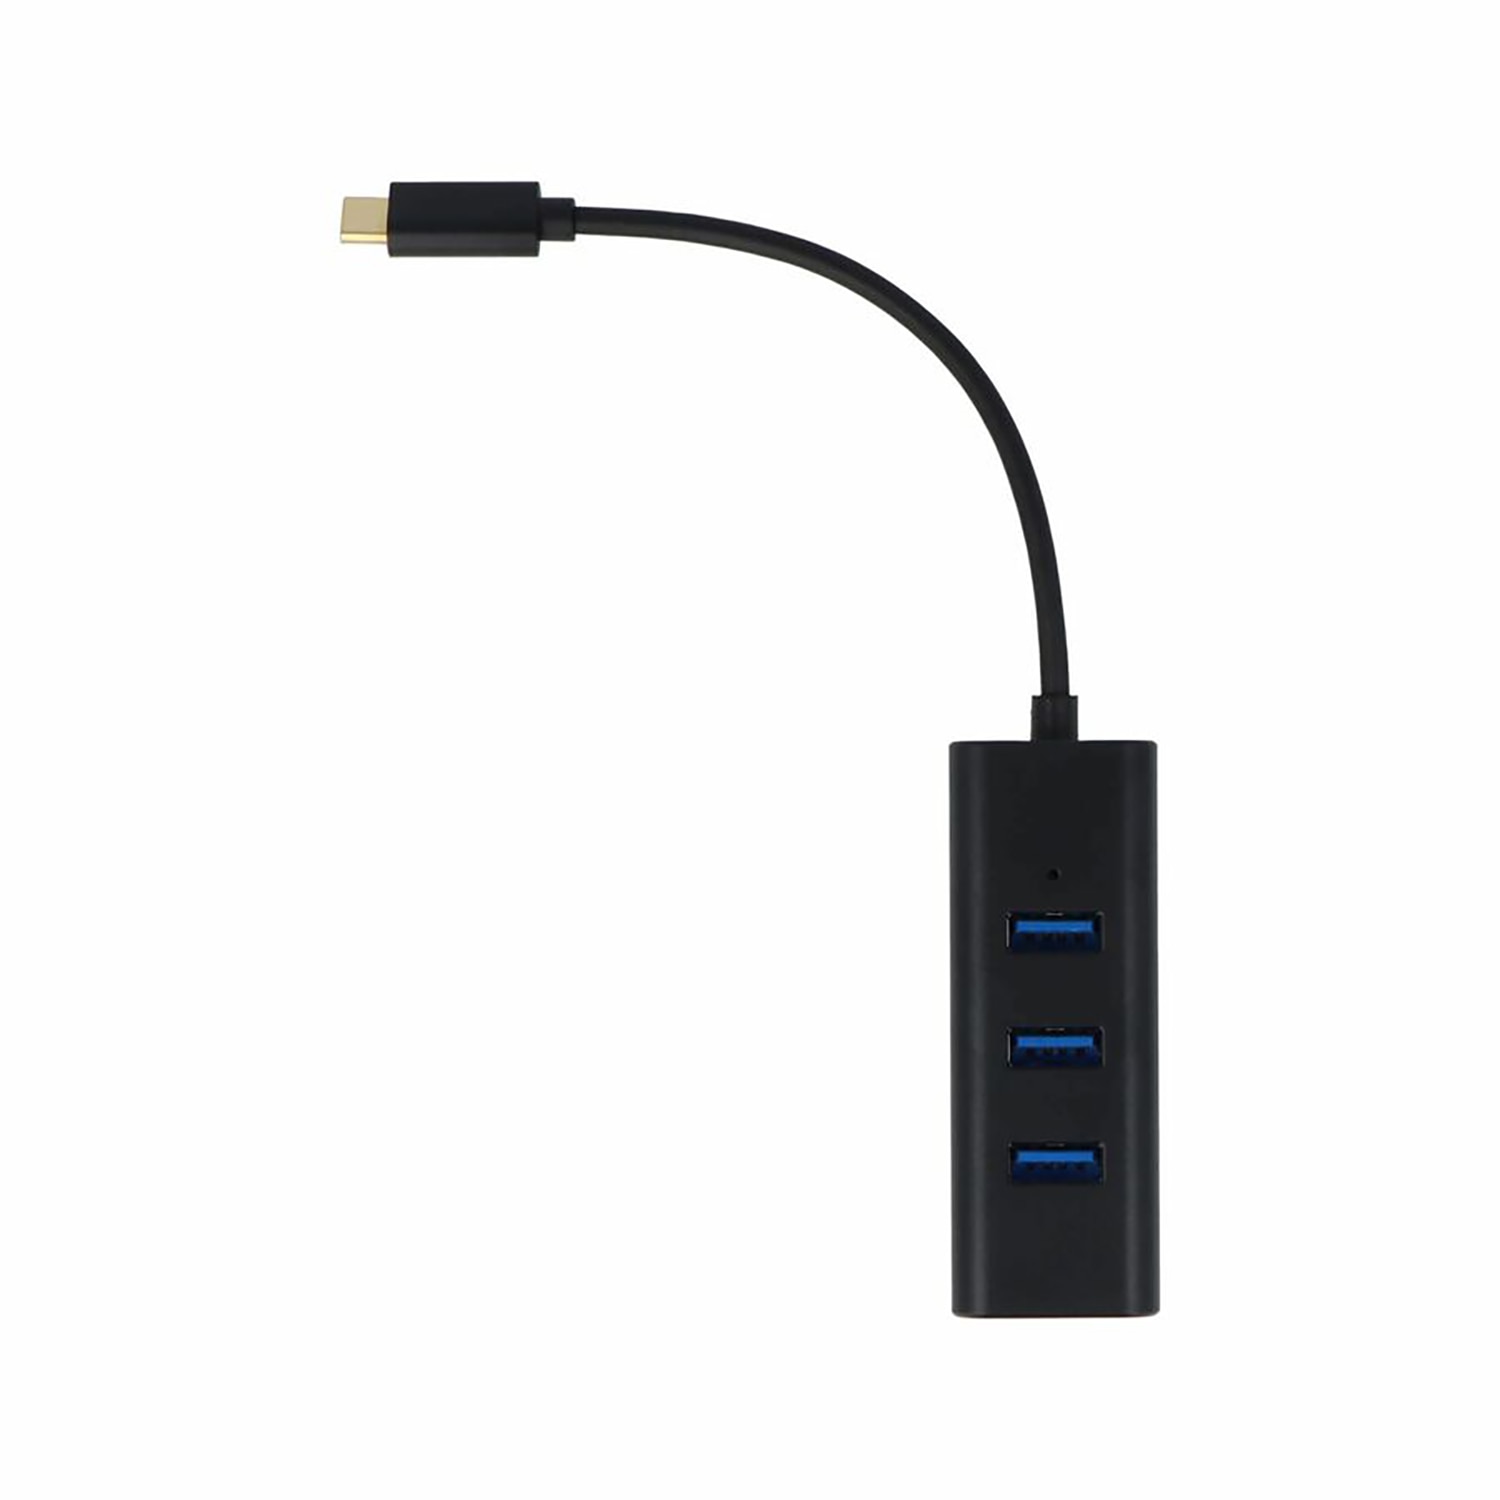 USB-C 4-Port USB 3.0 Hub